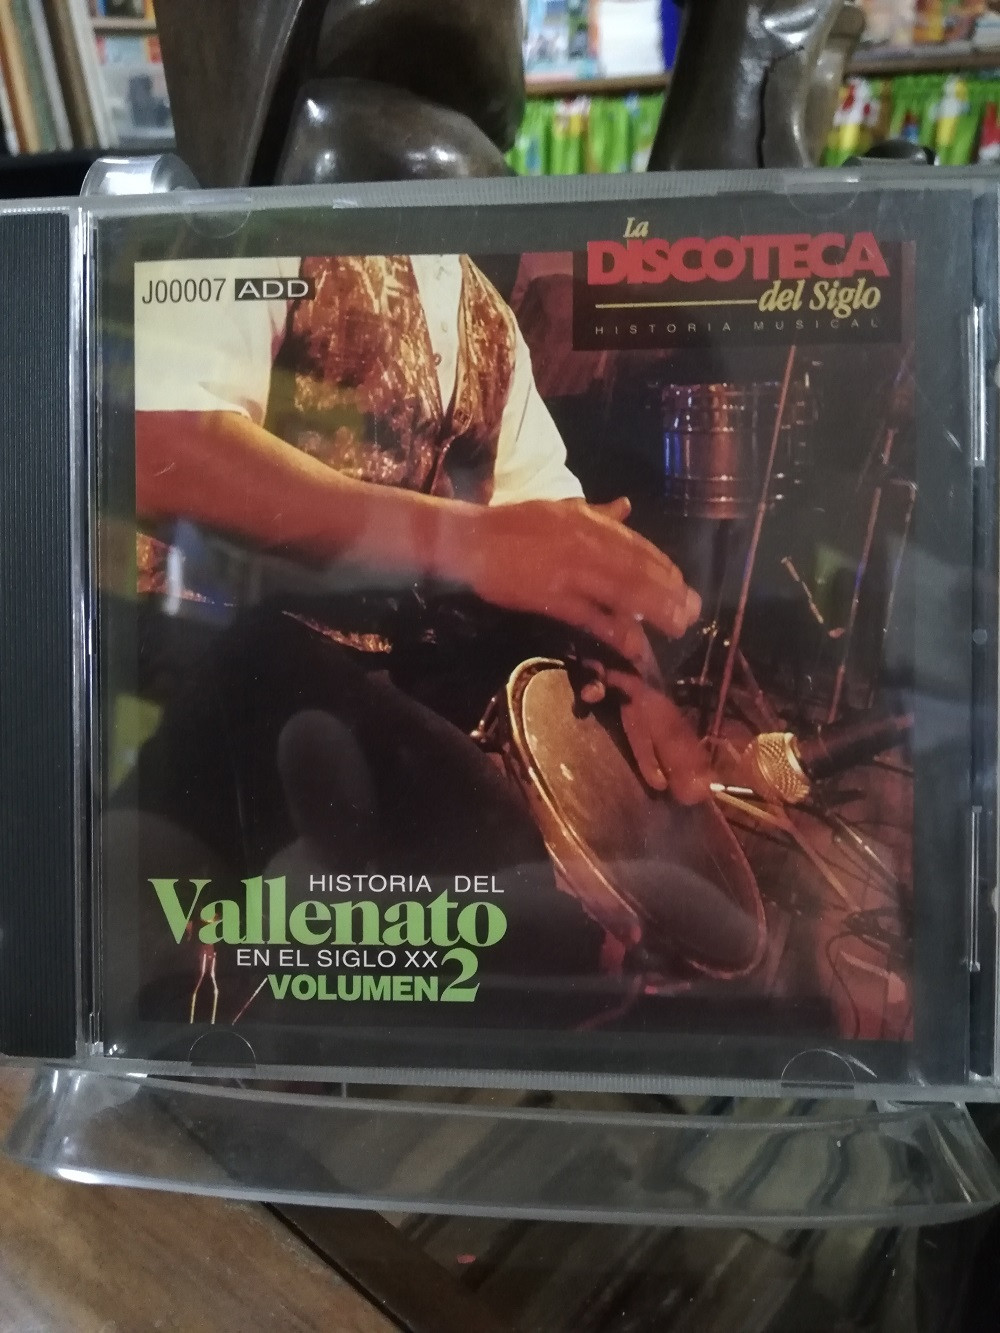 Imagen CD HISTORIA DEL VALLENATO EN EL SIGLO XX - HISTORIA DEL VALLENATO VOL. 2